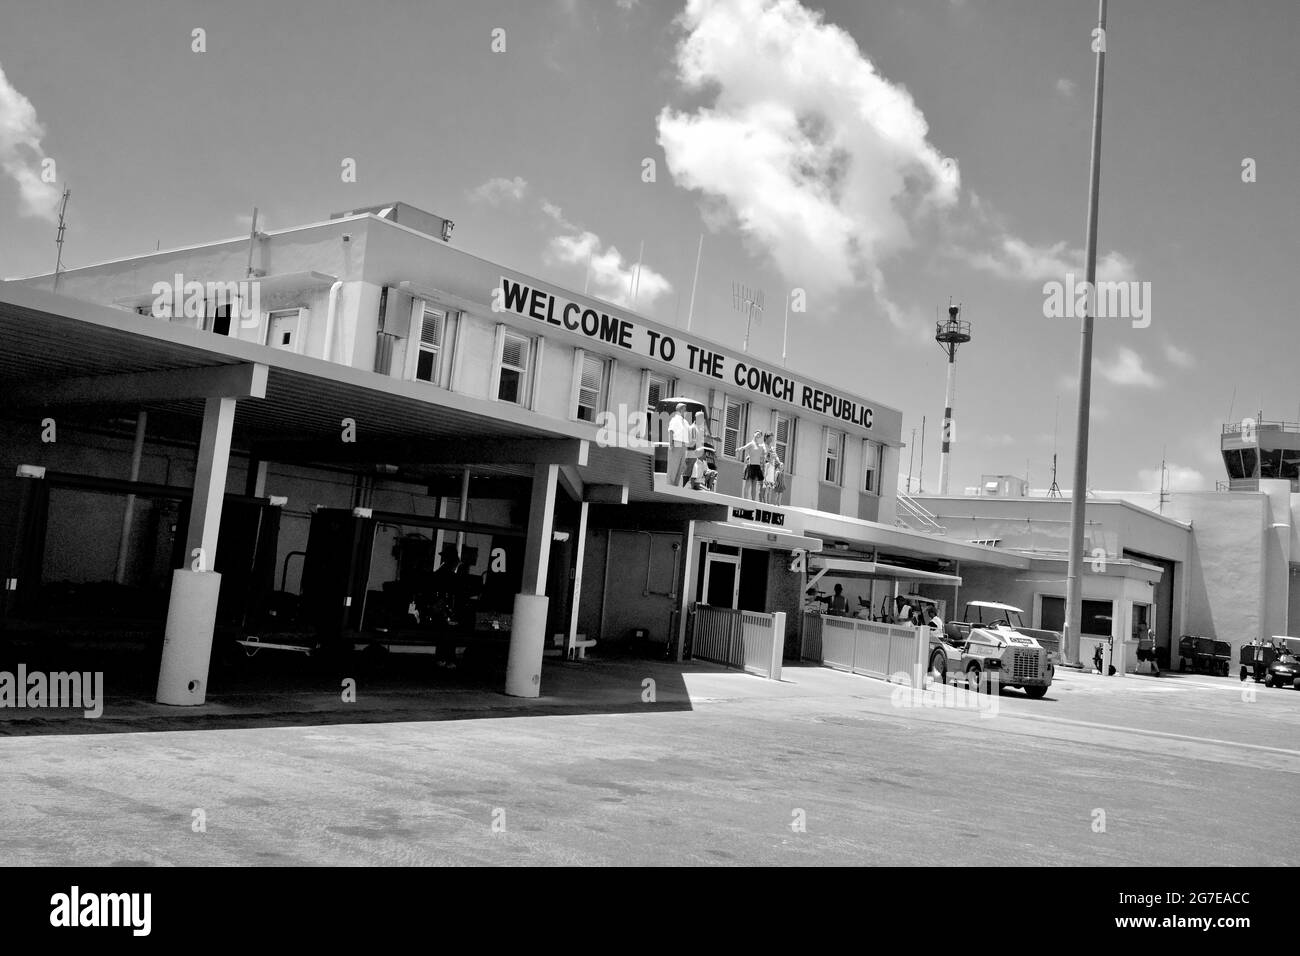 Aéroport international de Key West à Key West, FL, Floride, États-Unis. Façade du terminal accueillant les touristes à Key West. Petit et daté. Banque D'Images